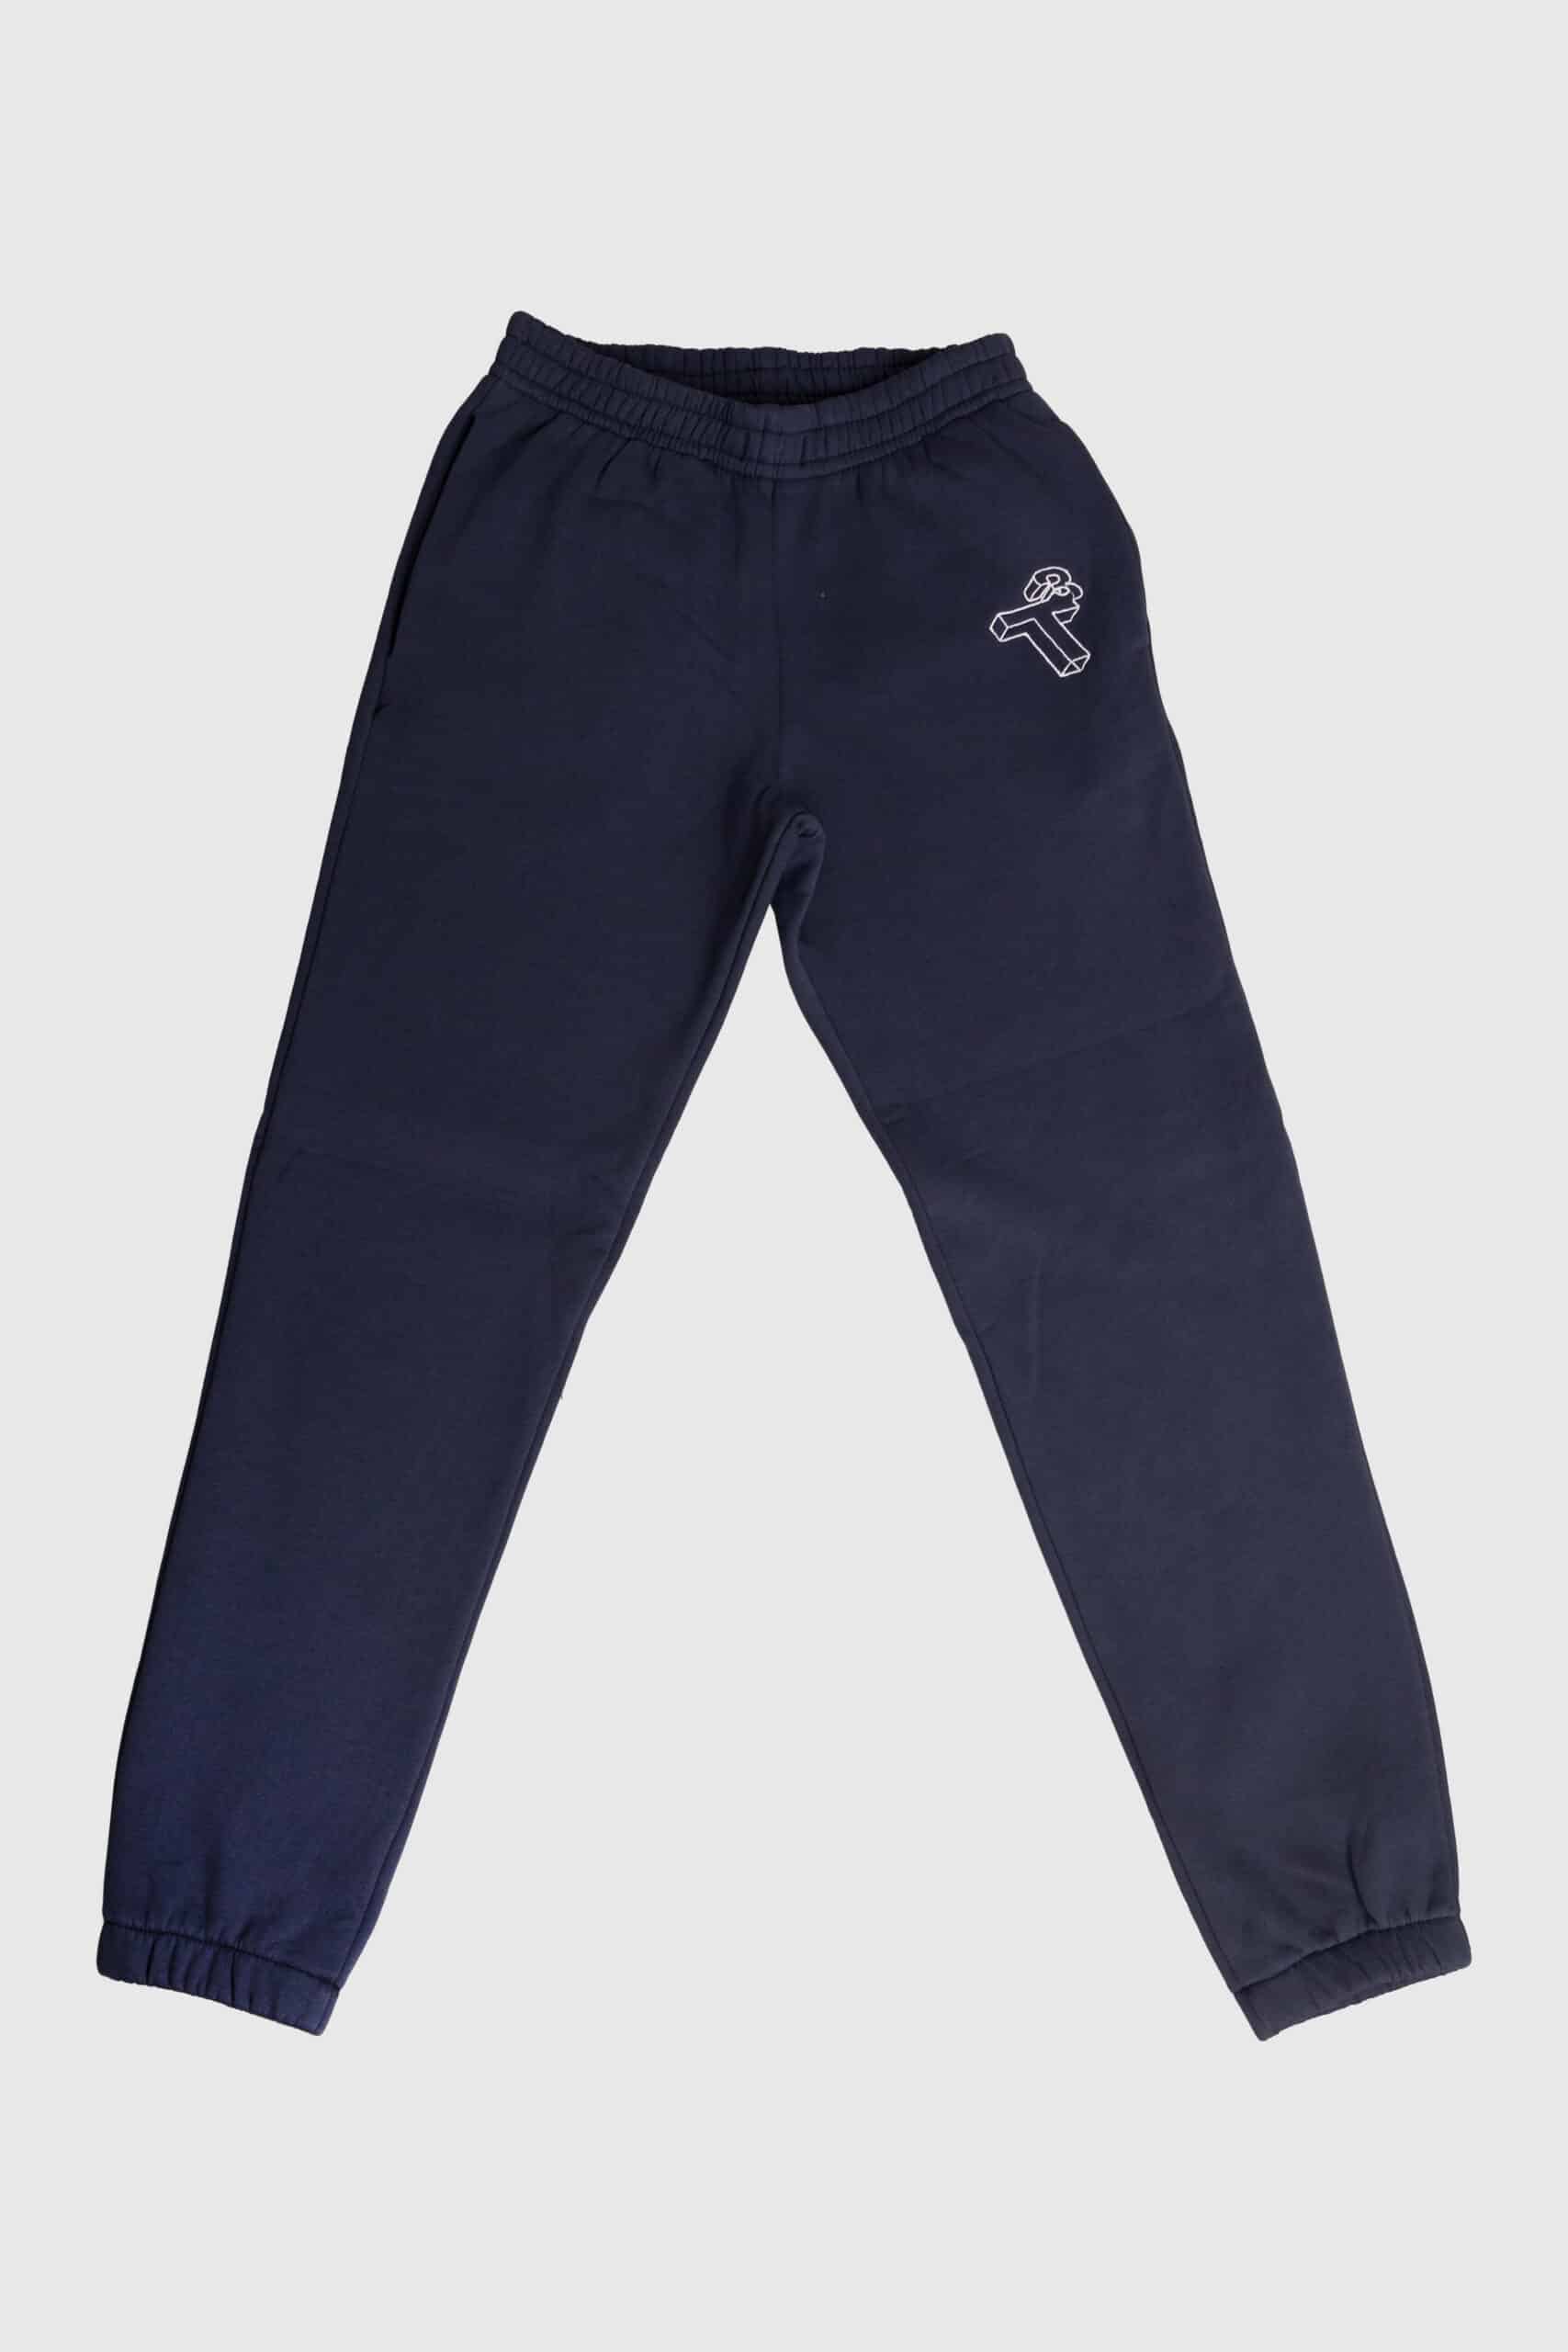 מכנסיים ארוכים גברים - T3 כחול נייבי